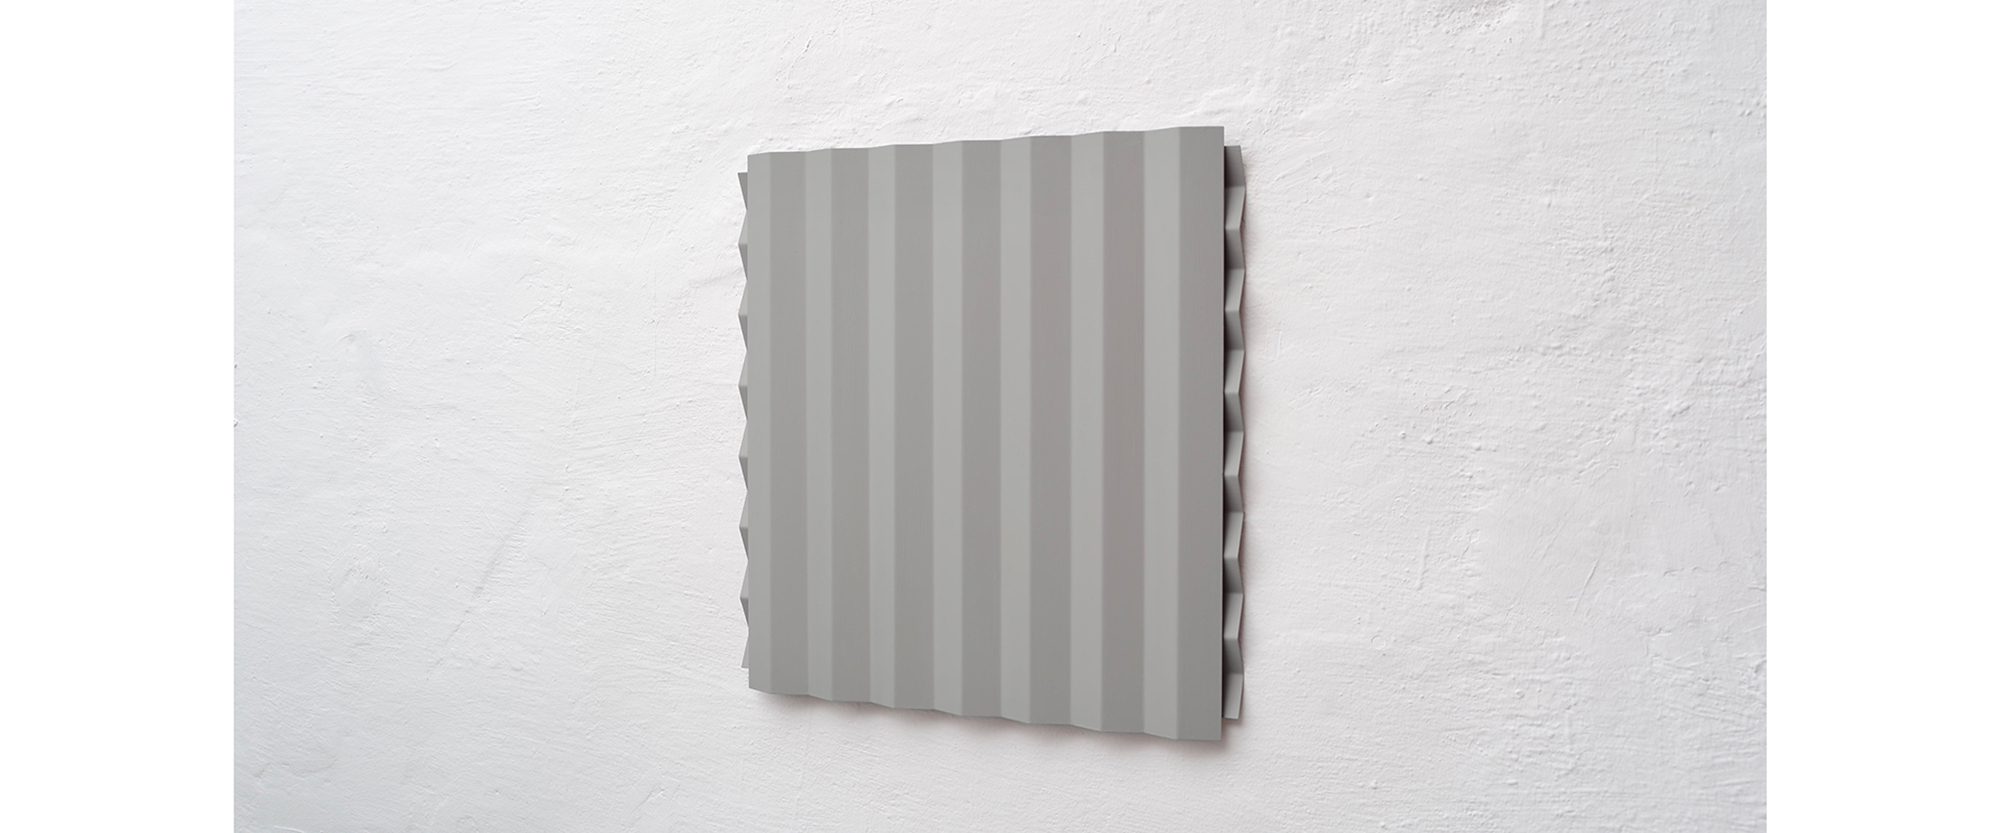 ZWEIFACH, 2017, Stahl, Acryl, 49 x 49 x 4 cm